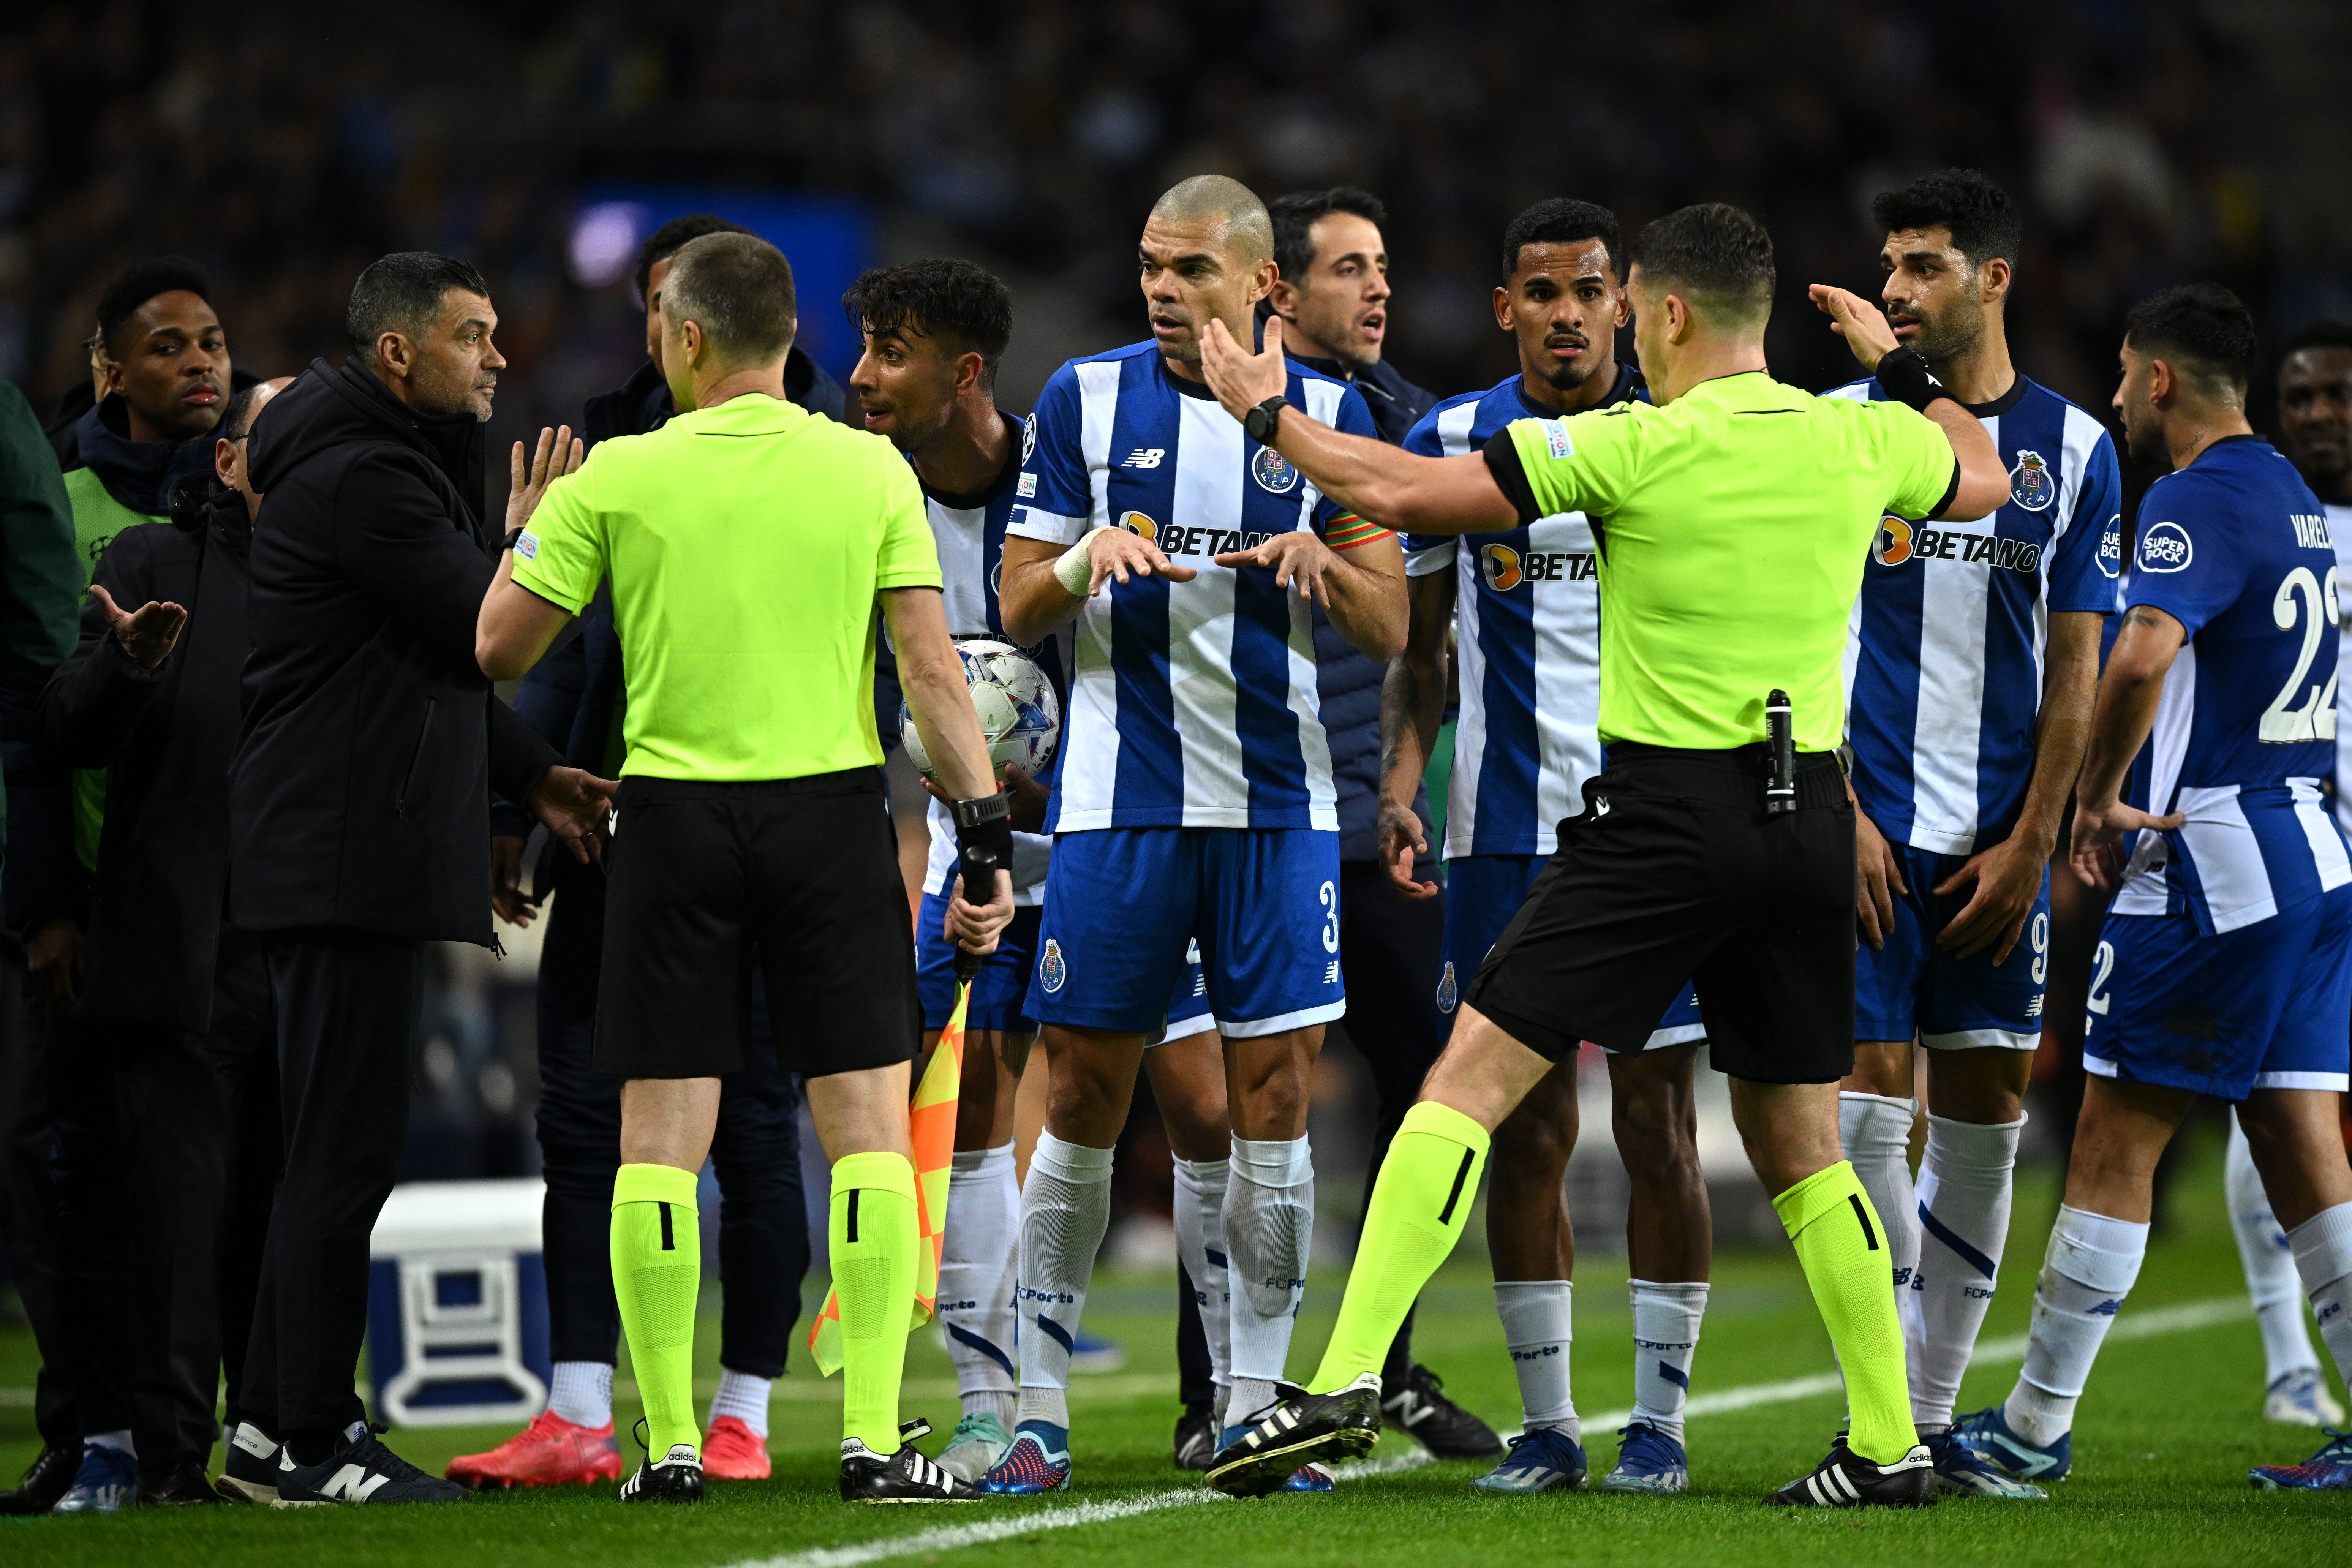 Antrenorul de la Porto a dezvăluit ce i-a spus asistentul lui Kovacs, după ce a ridicat eronat fanionul: ”Nu e corect”